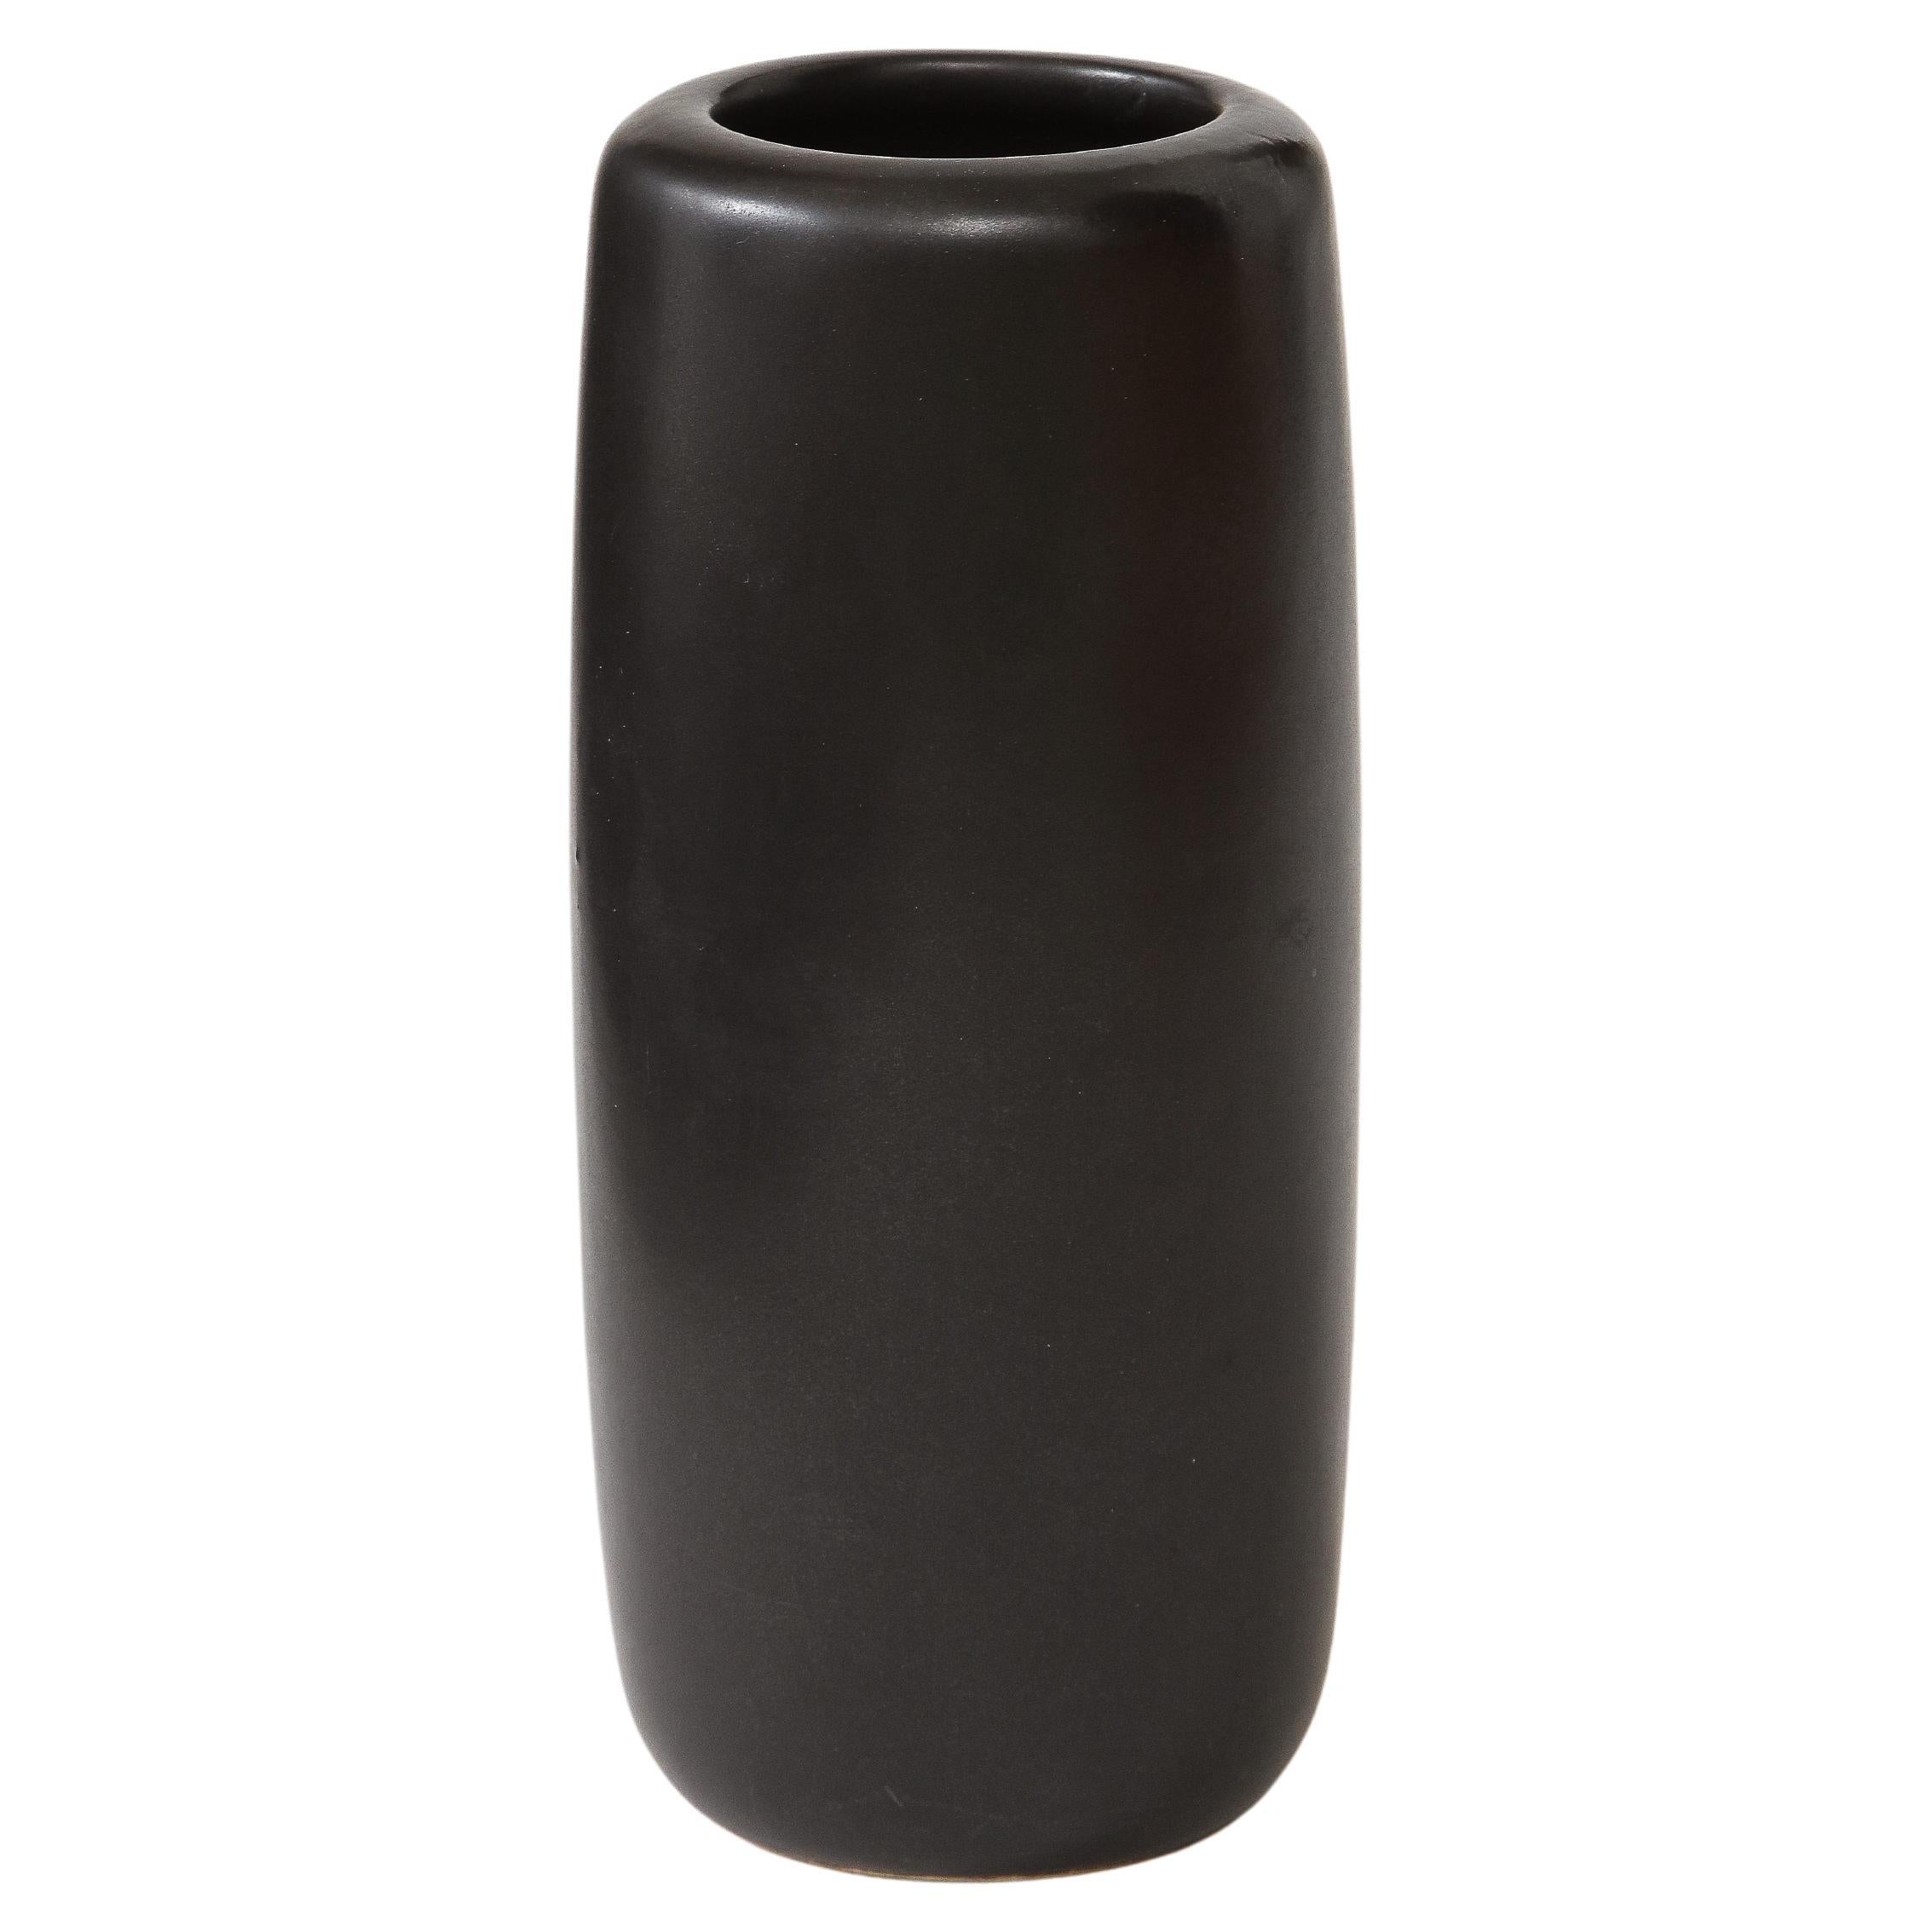 J. B. Matte Black Modern Vase, Signed, c. 1960